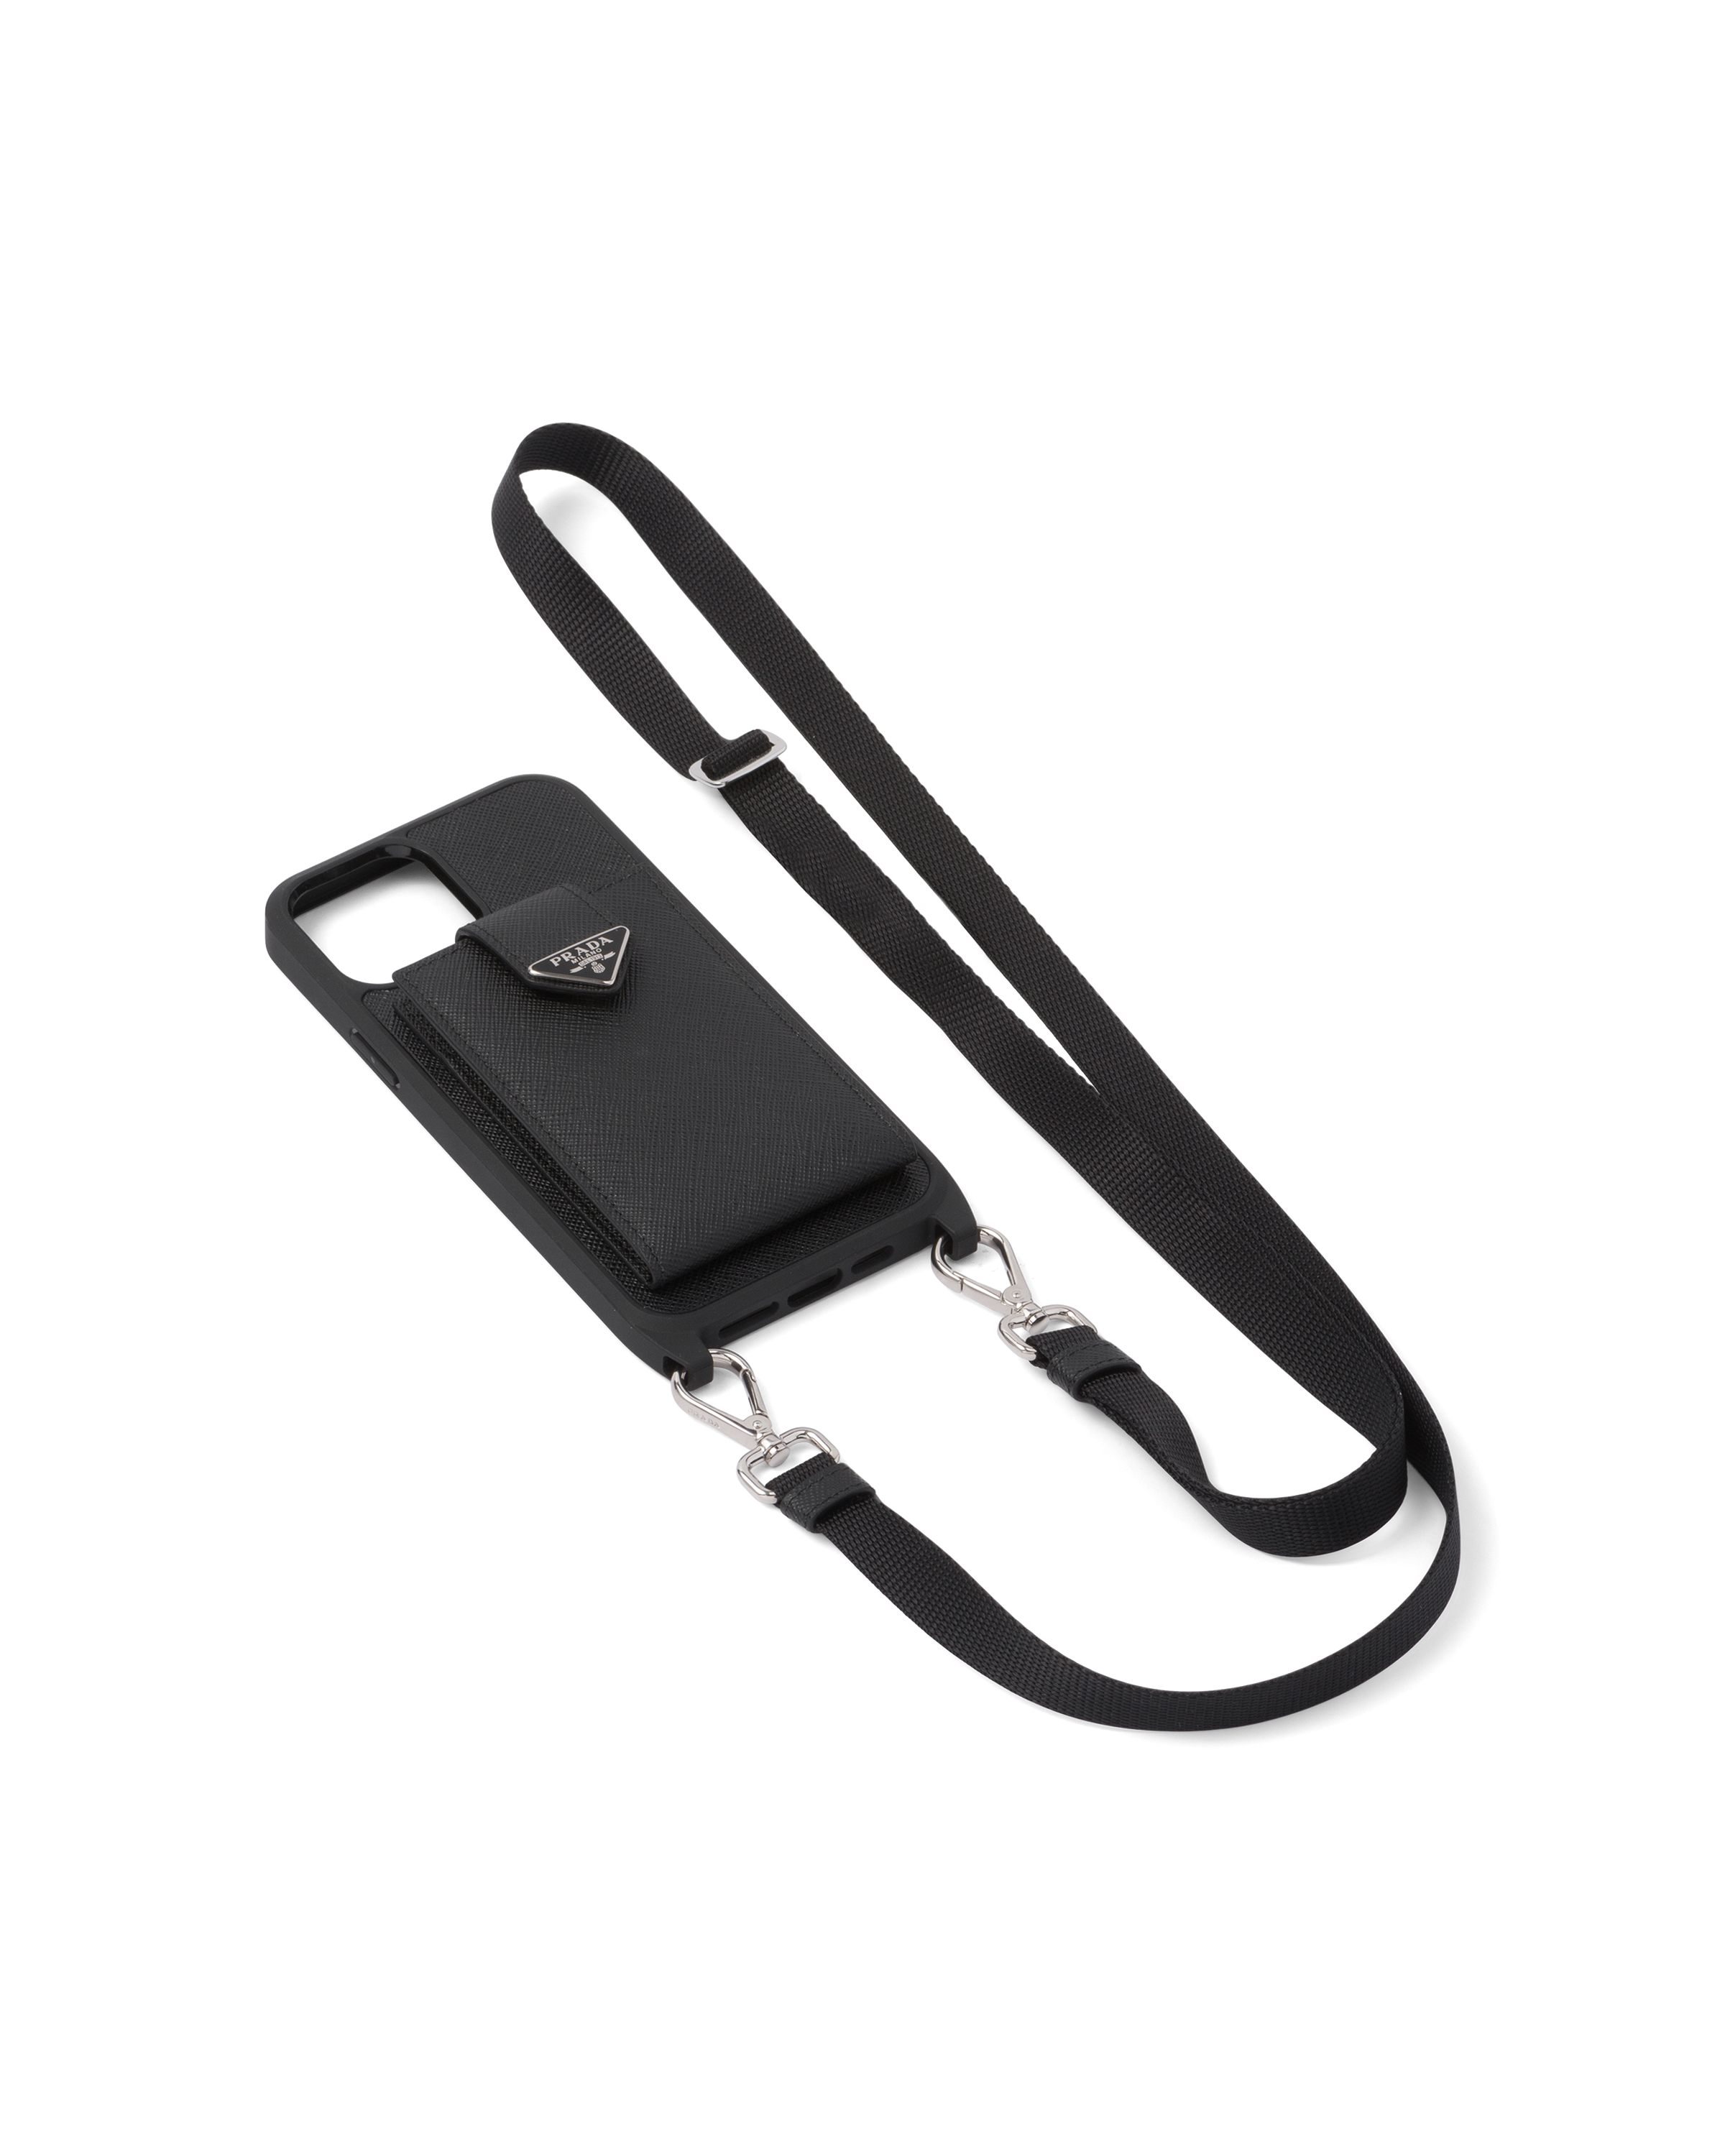 Black Leather Saffiano iPhone 13 Case 13 Pro 13 Pro Max 